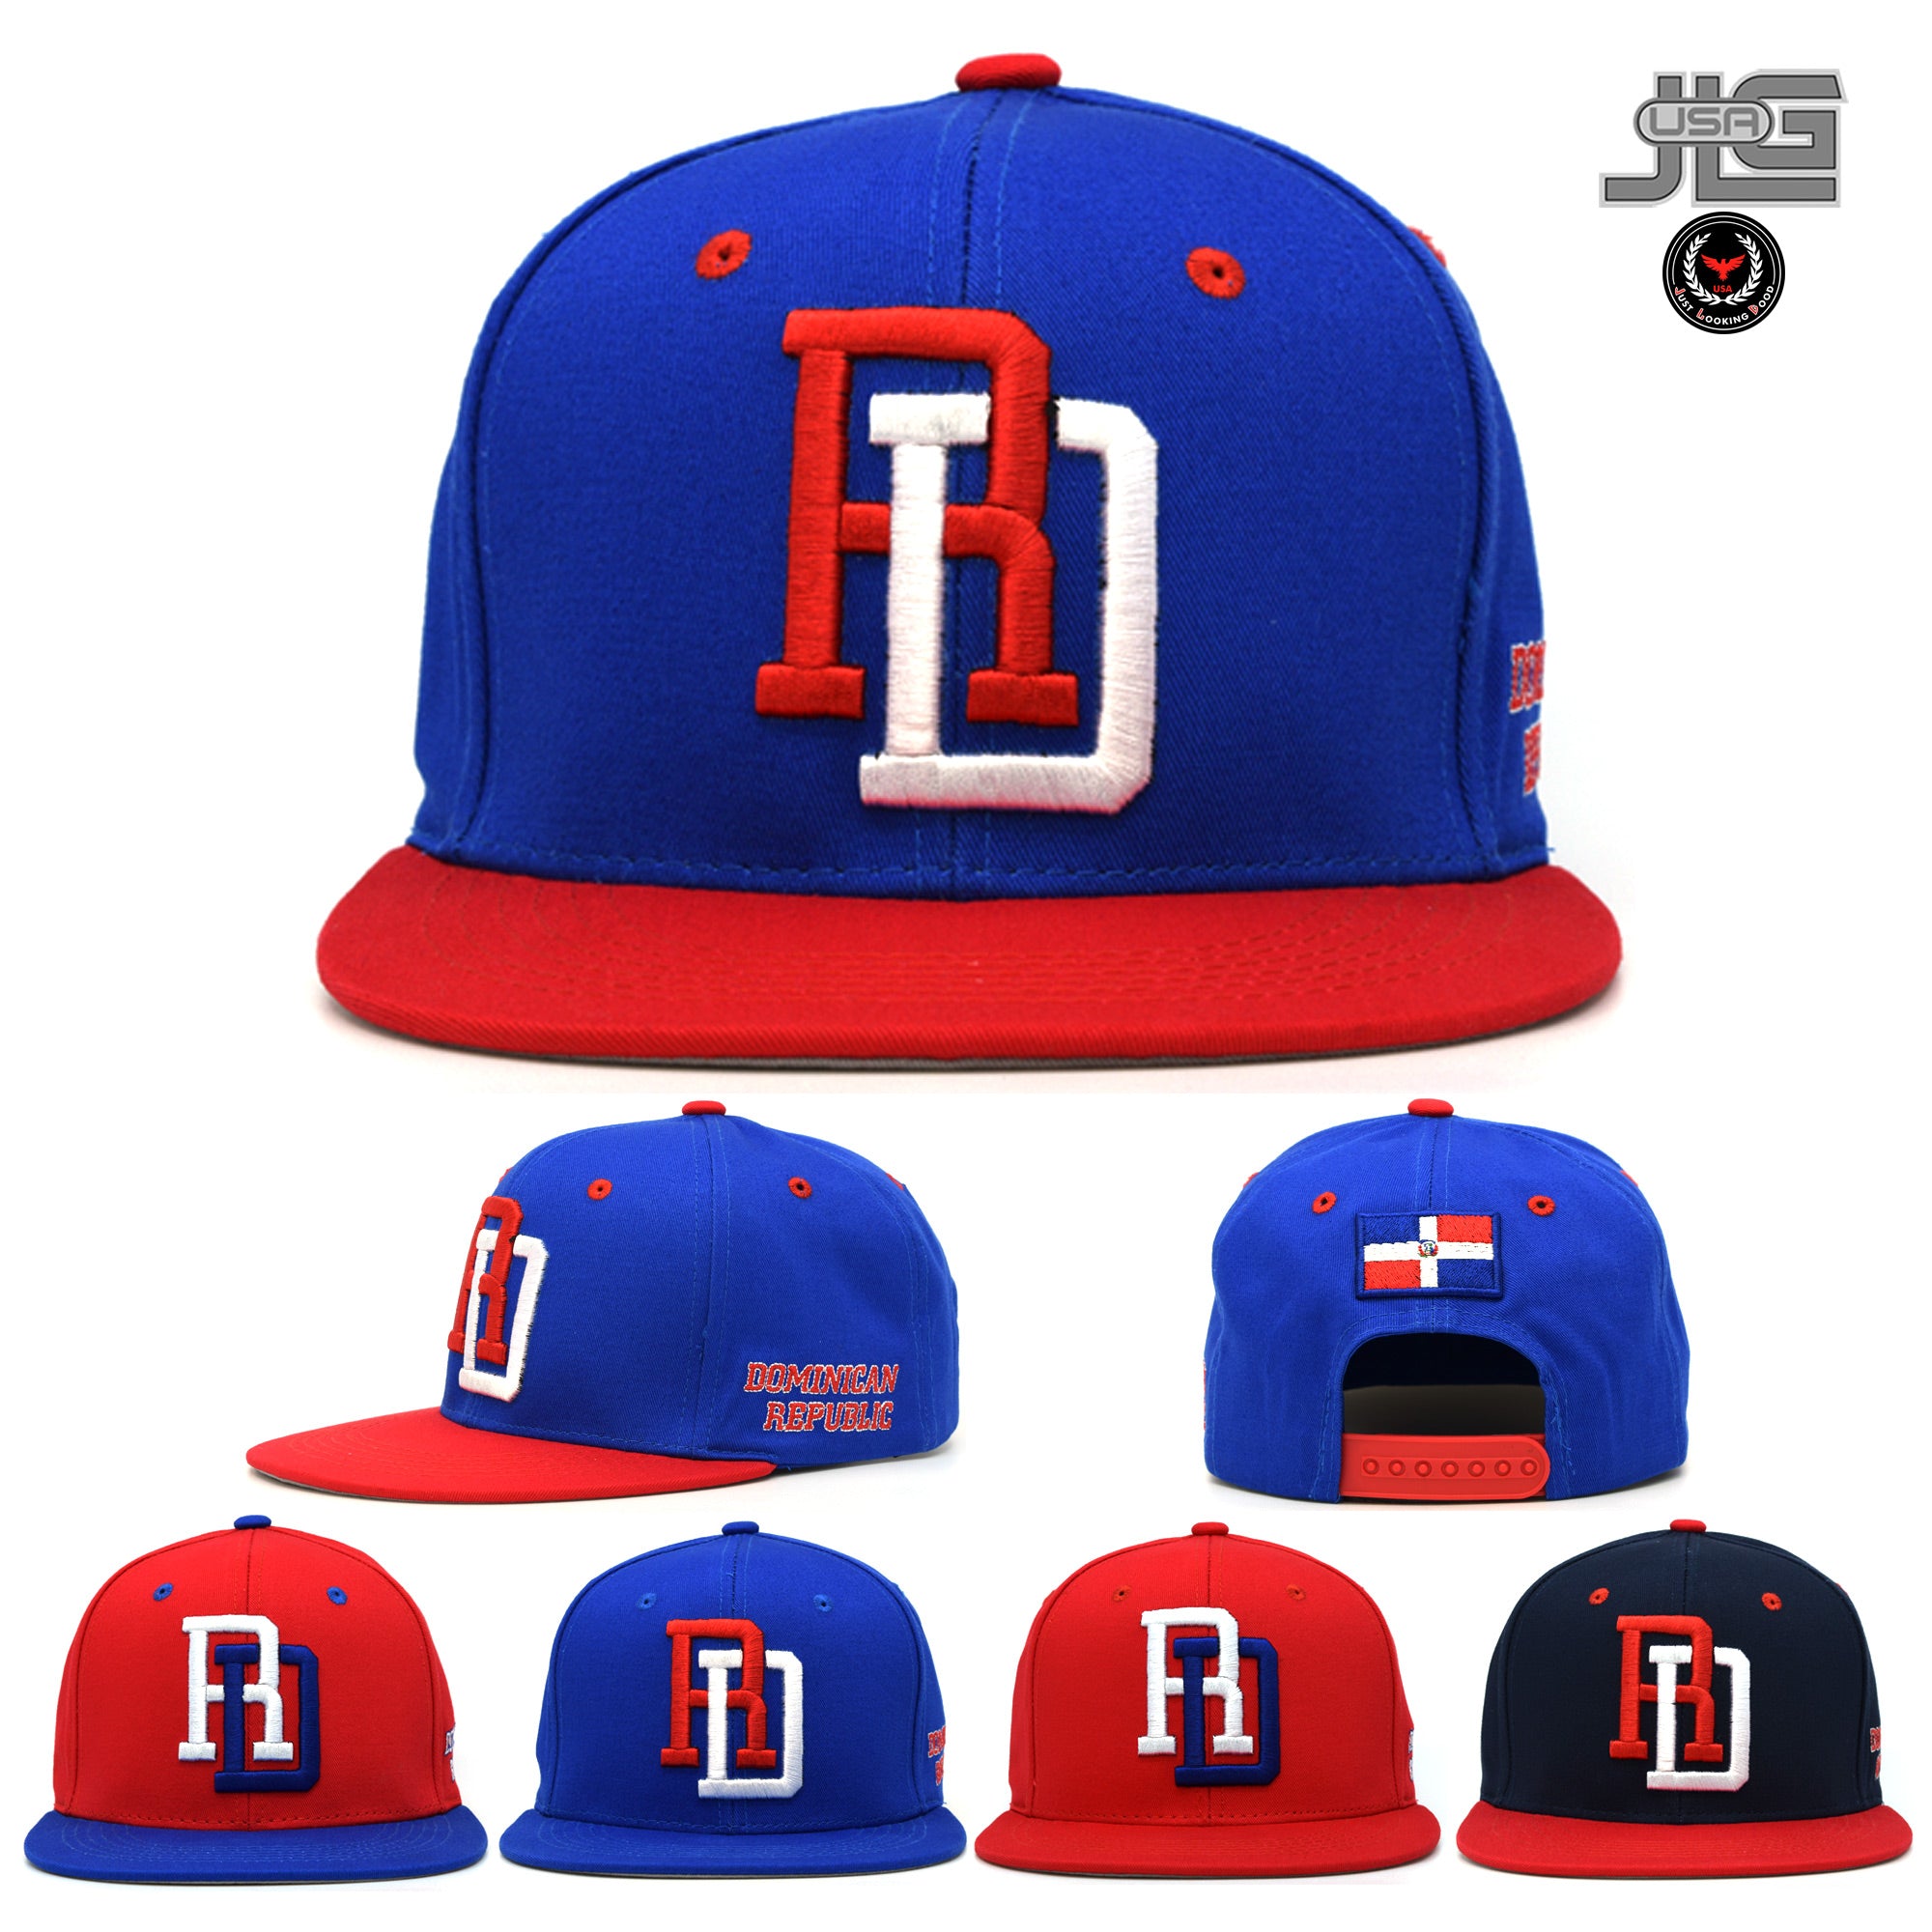 Republica Dominicana Baseball cap RD Cotton Dominican Republic DR Snapback  Hat Cap